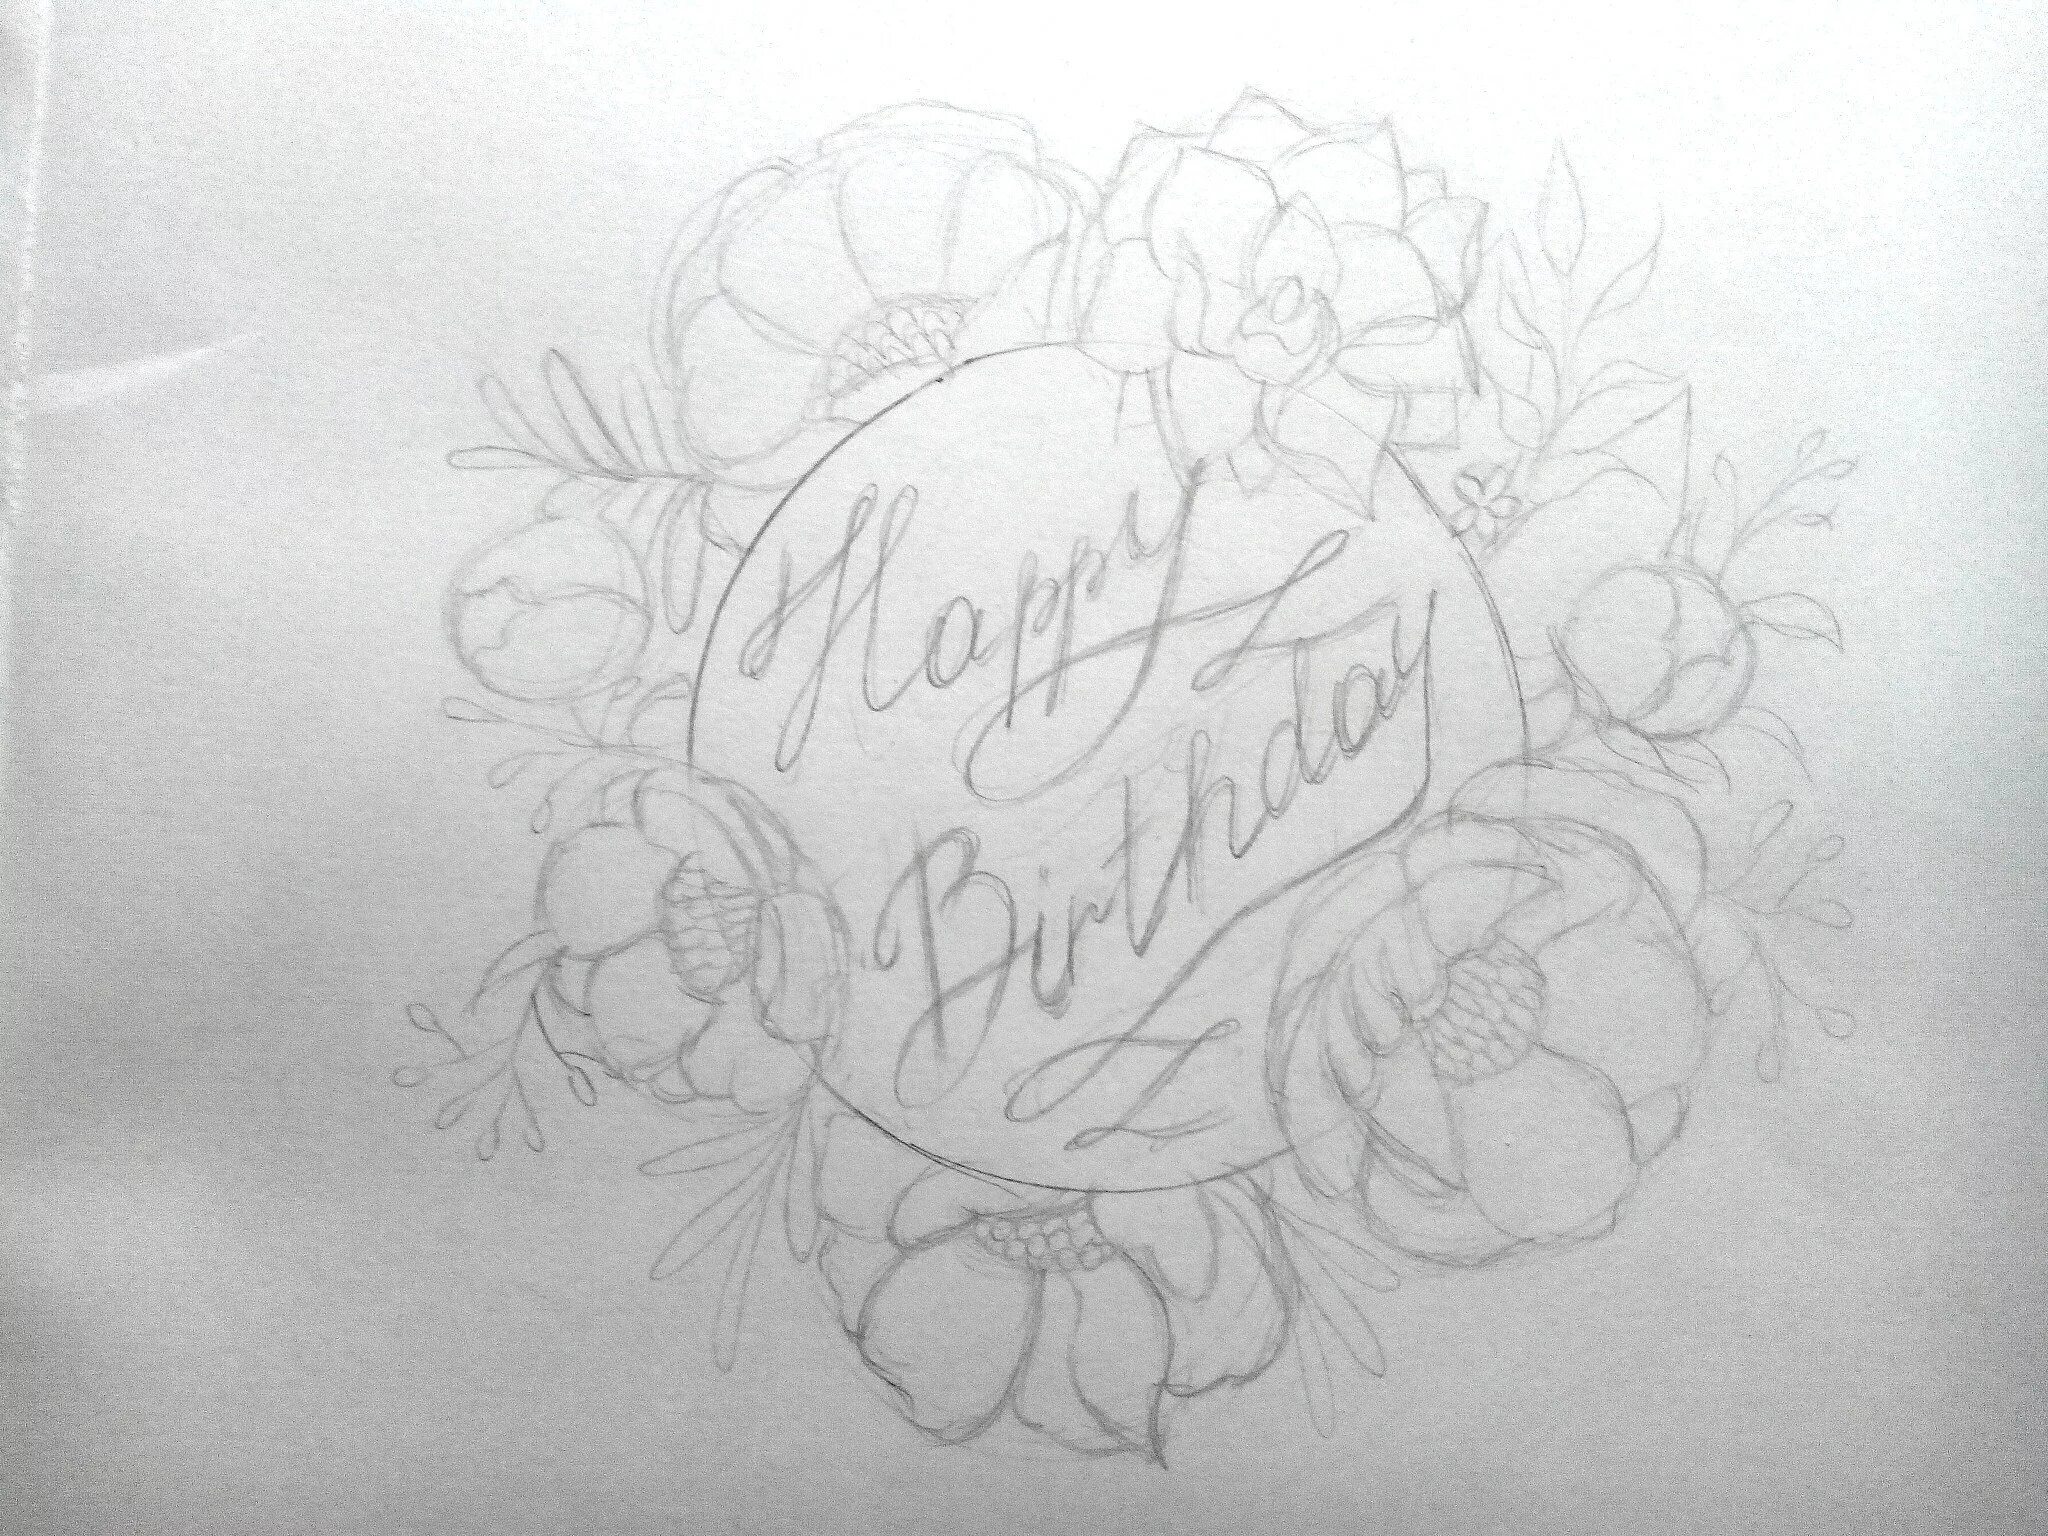 С днём рождения рисунок карандашом. Рисунки на день рождения маме карандашом. Красивый рисунок маме на день рождения. Рисунок маме на др карандашом. Красивая открытка карандашом